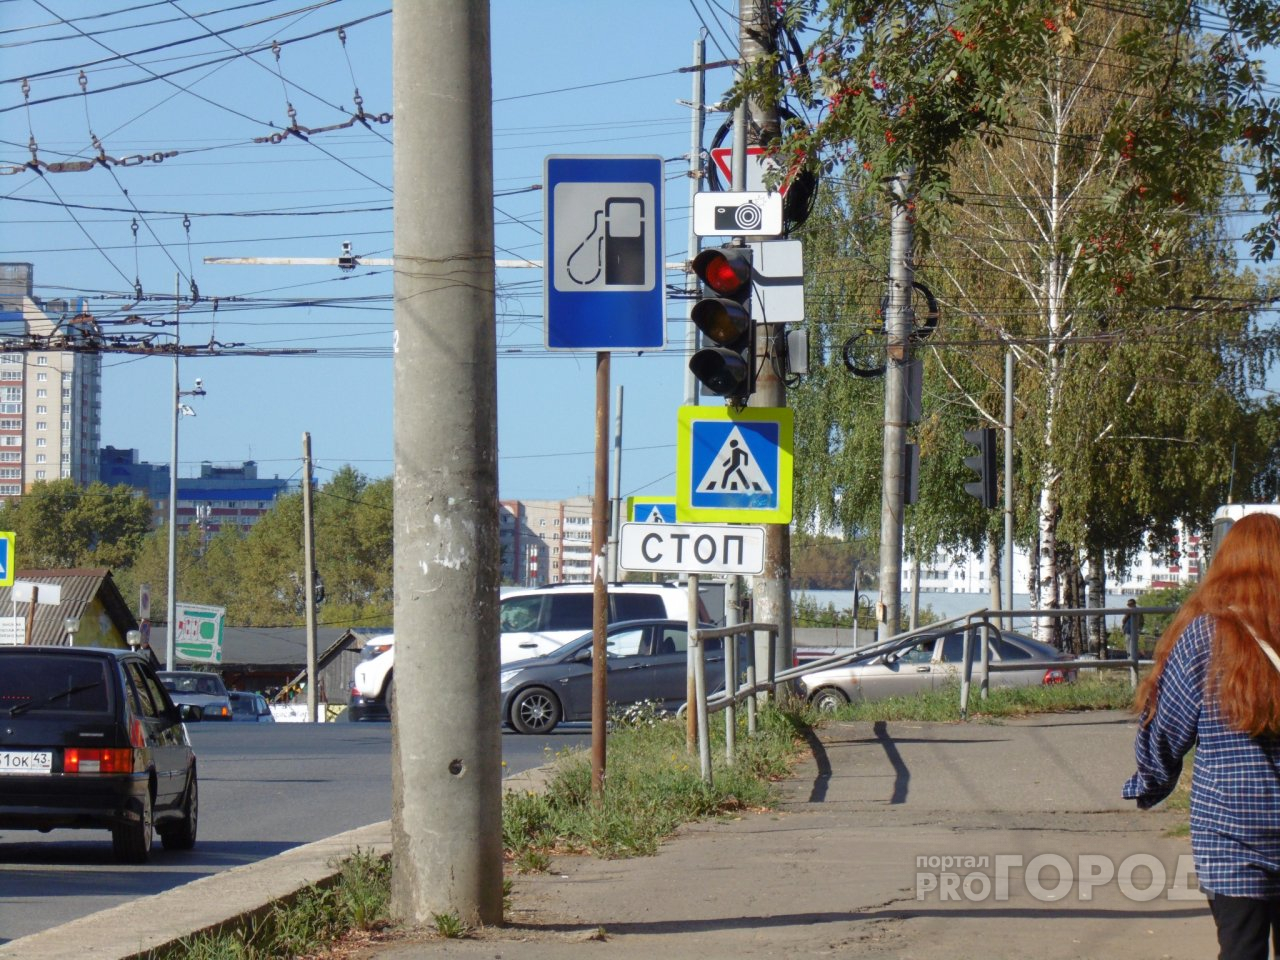 Прокуратура выявила в Кирове 25 светофоров в аварийном состоянии